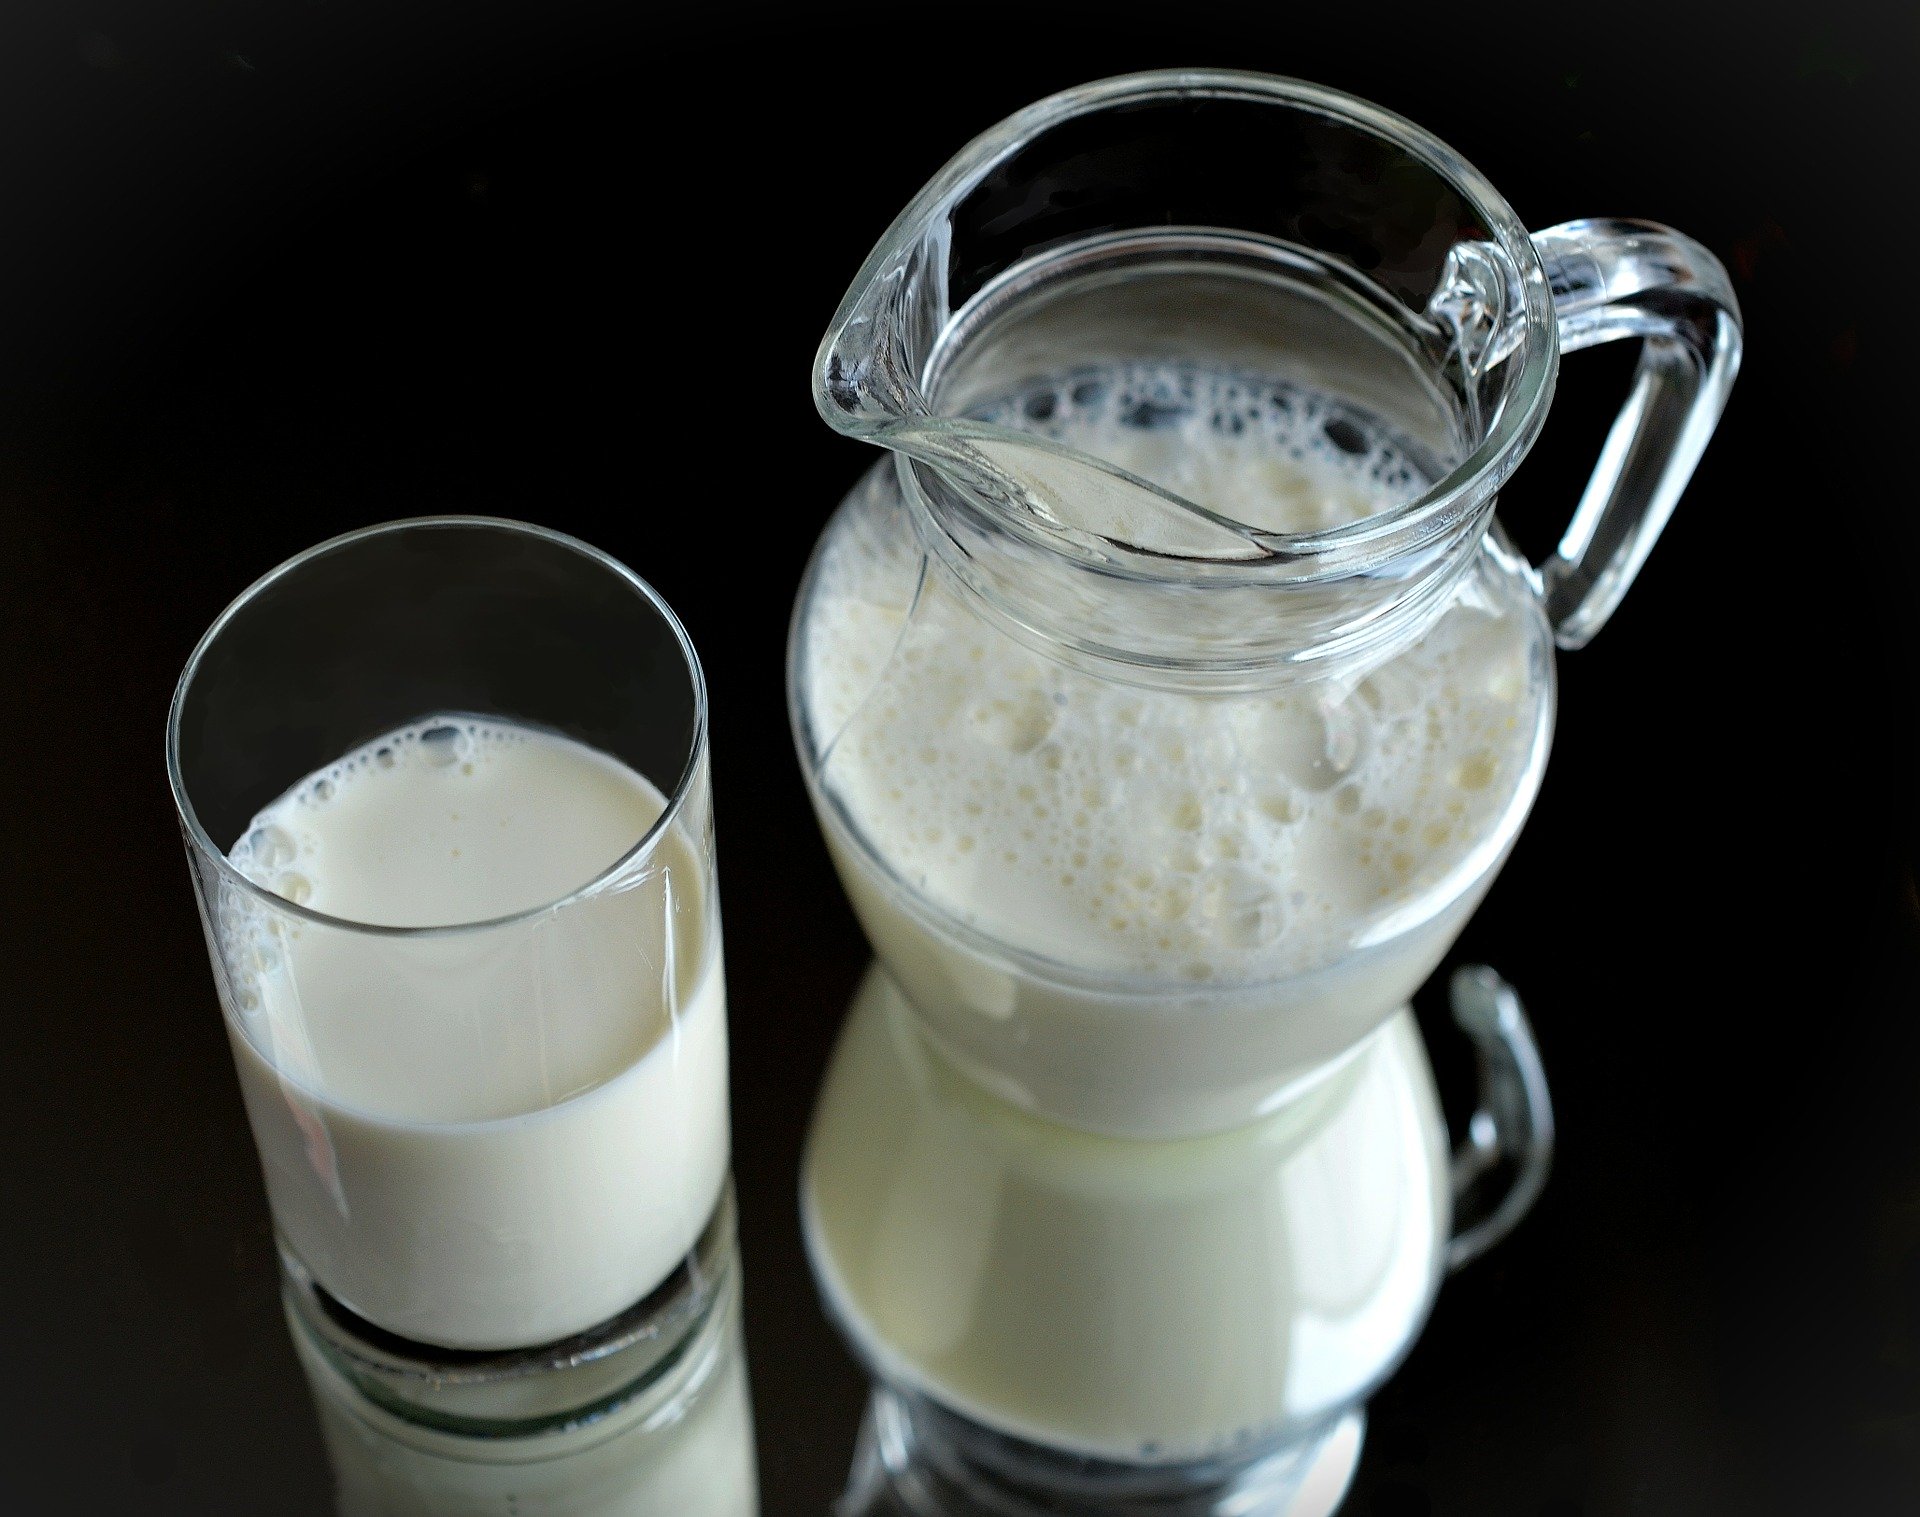 La lactosa es el azúcar que tiene la leche